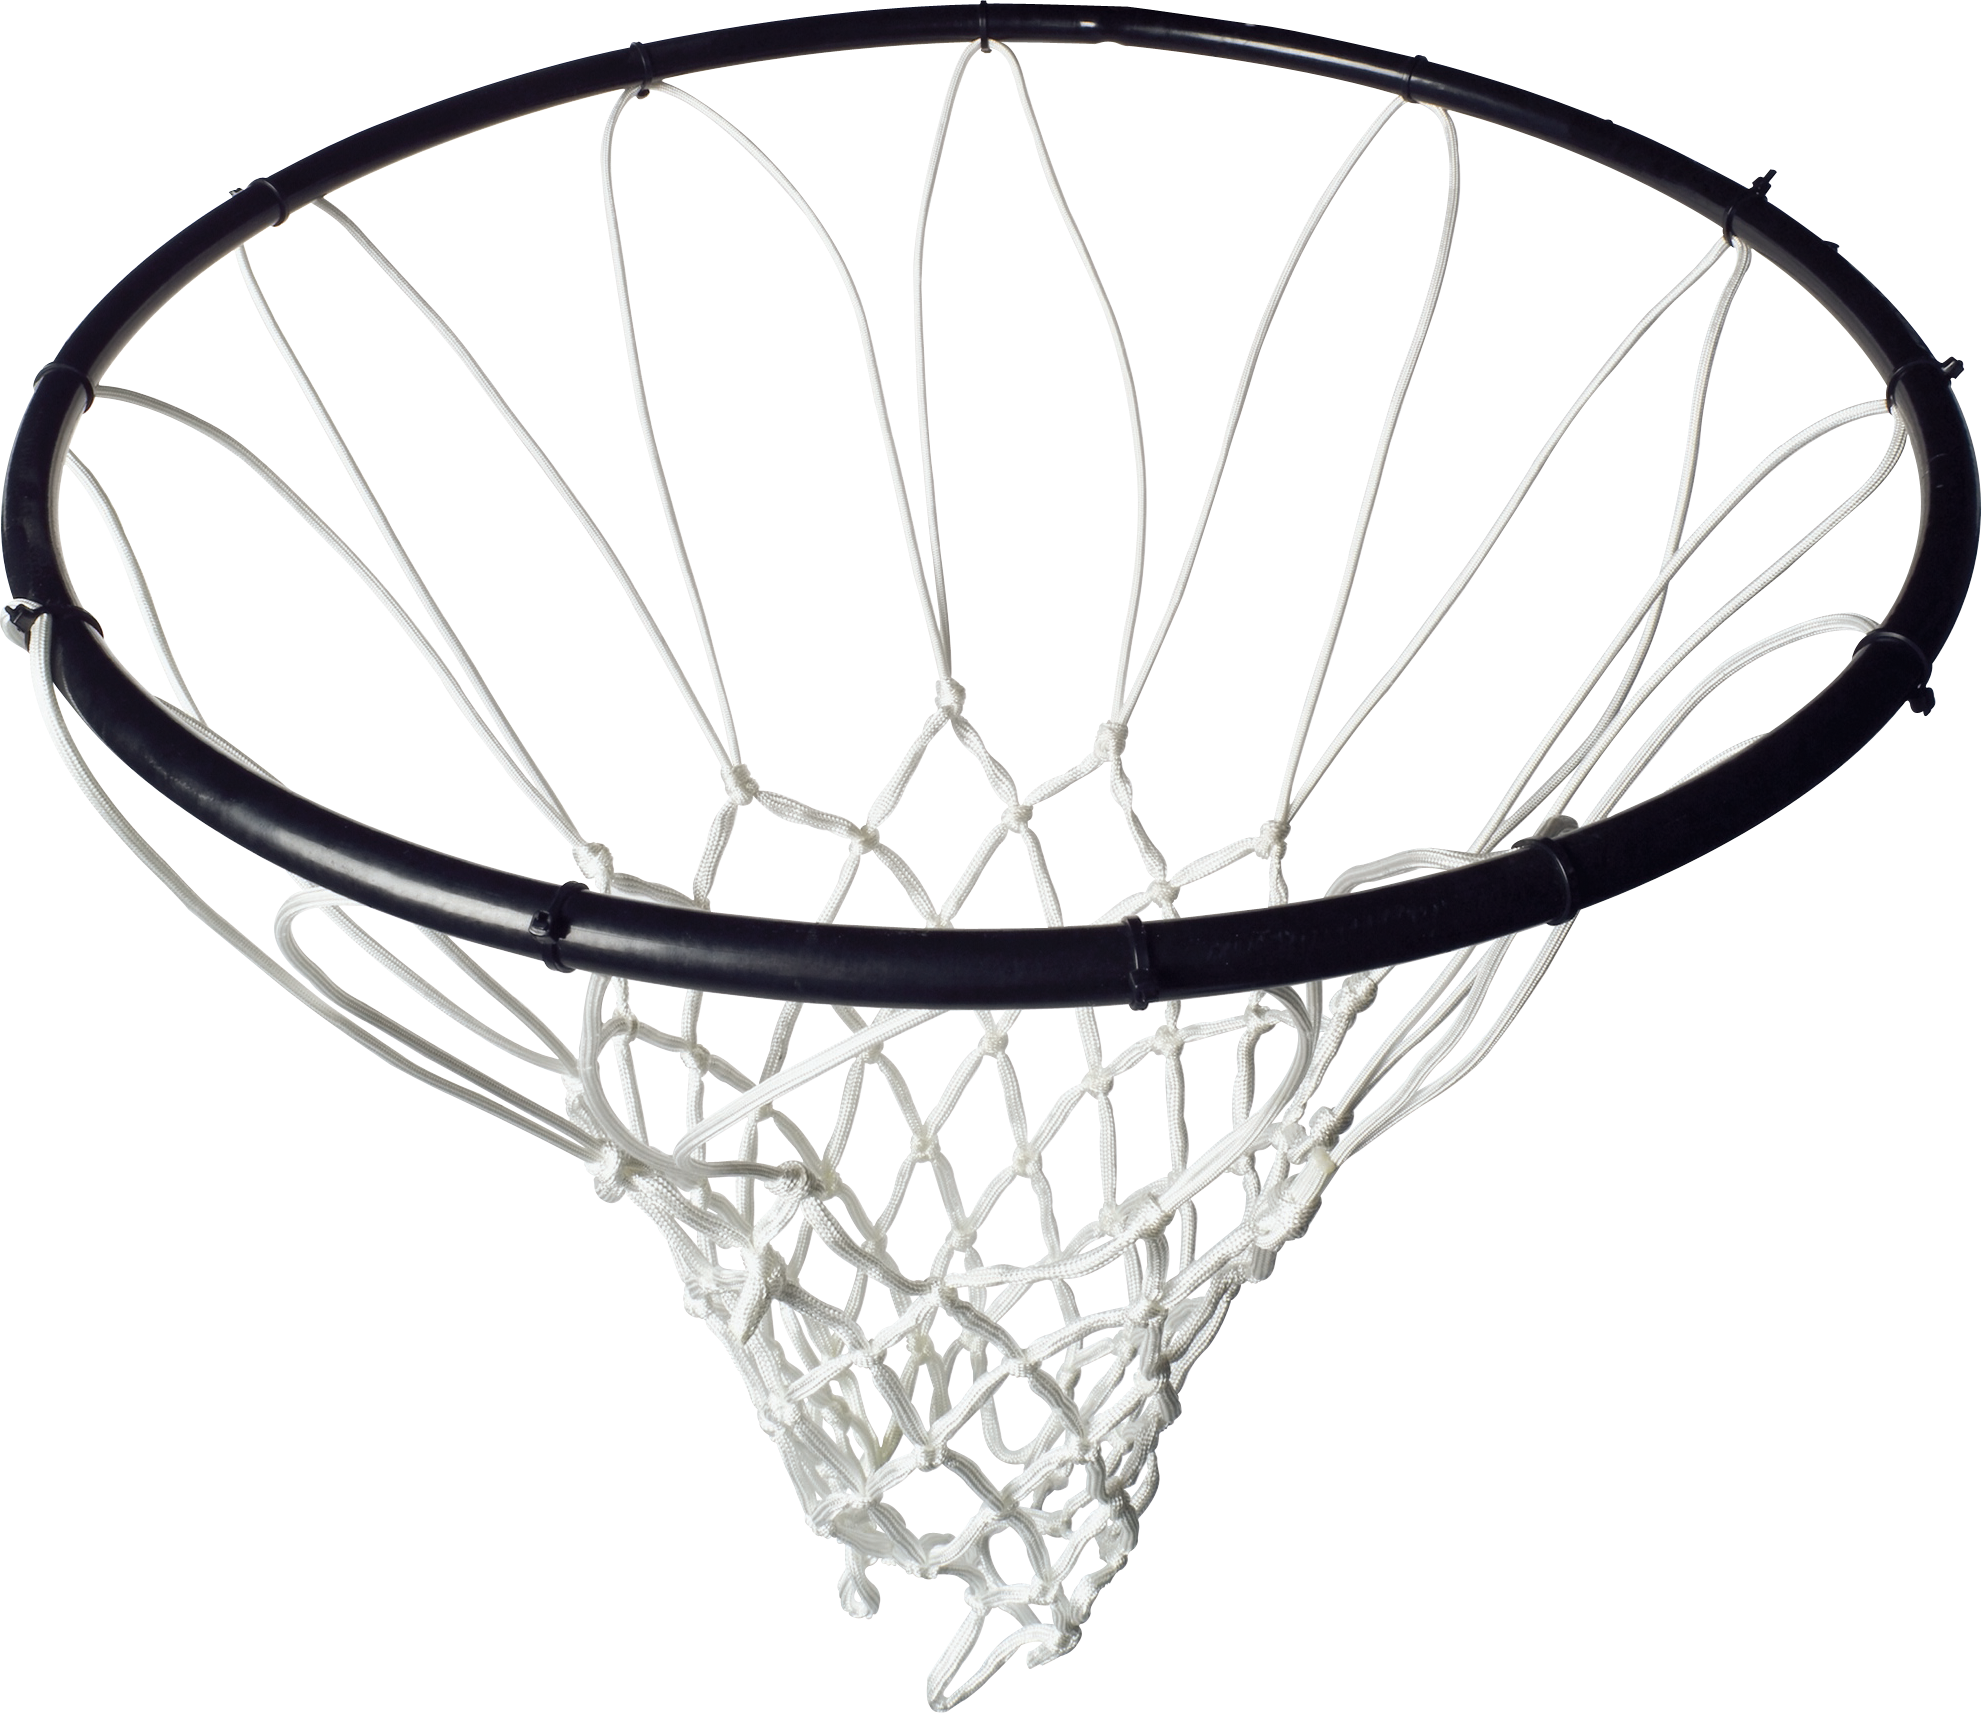 Ring basket